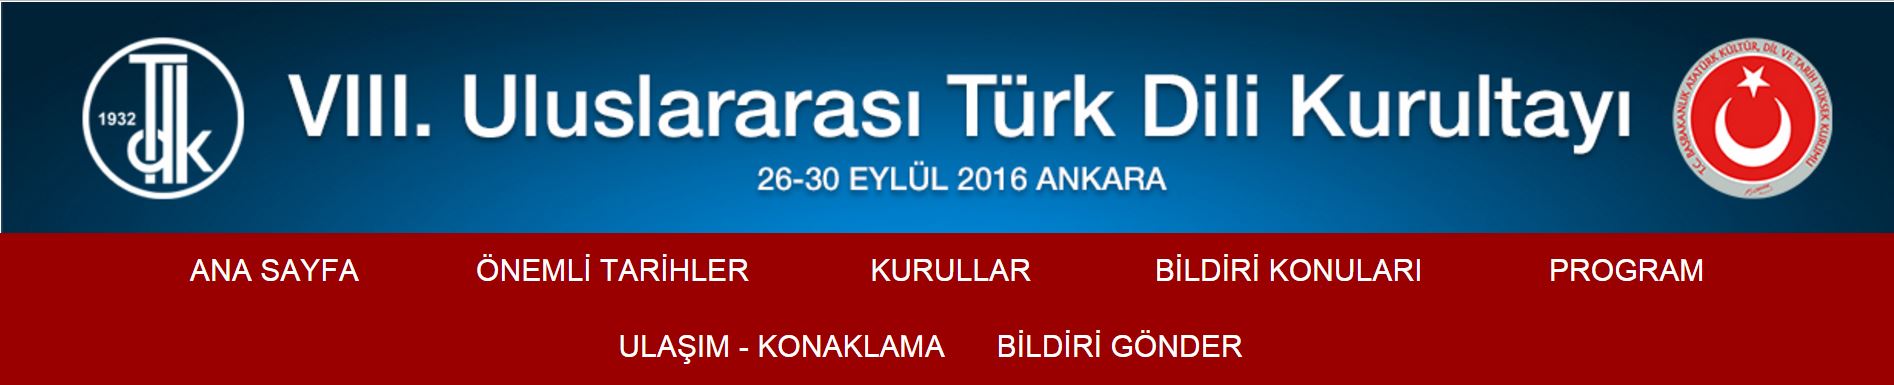 VIII. Uluslararası Türk Dili Kurultayı